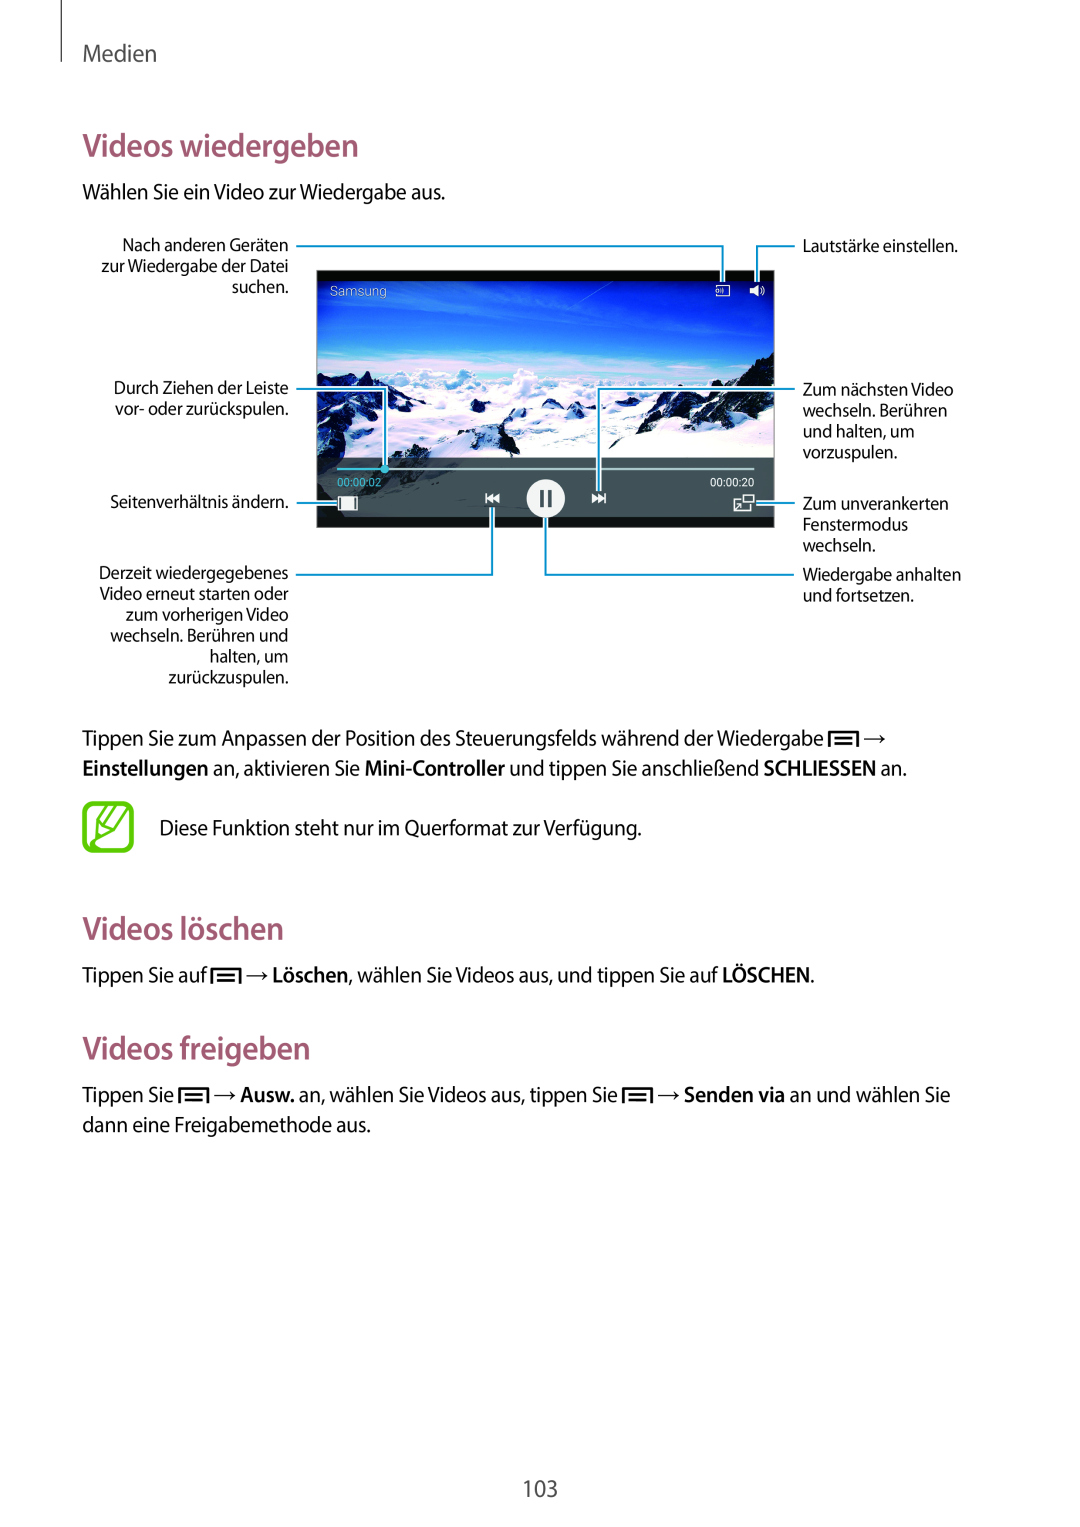 Samsung SM-N9005ZKEVIA, SM-N9005ZKEXEO, SM-N9005ZWEVD2 manual Videos löschen, Videos freigeben, Videos wiedergeben, Medien 